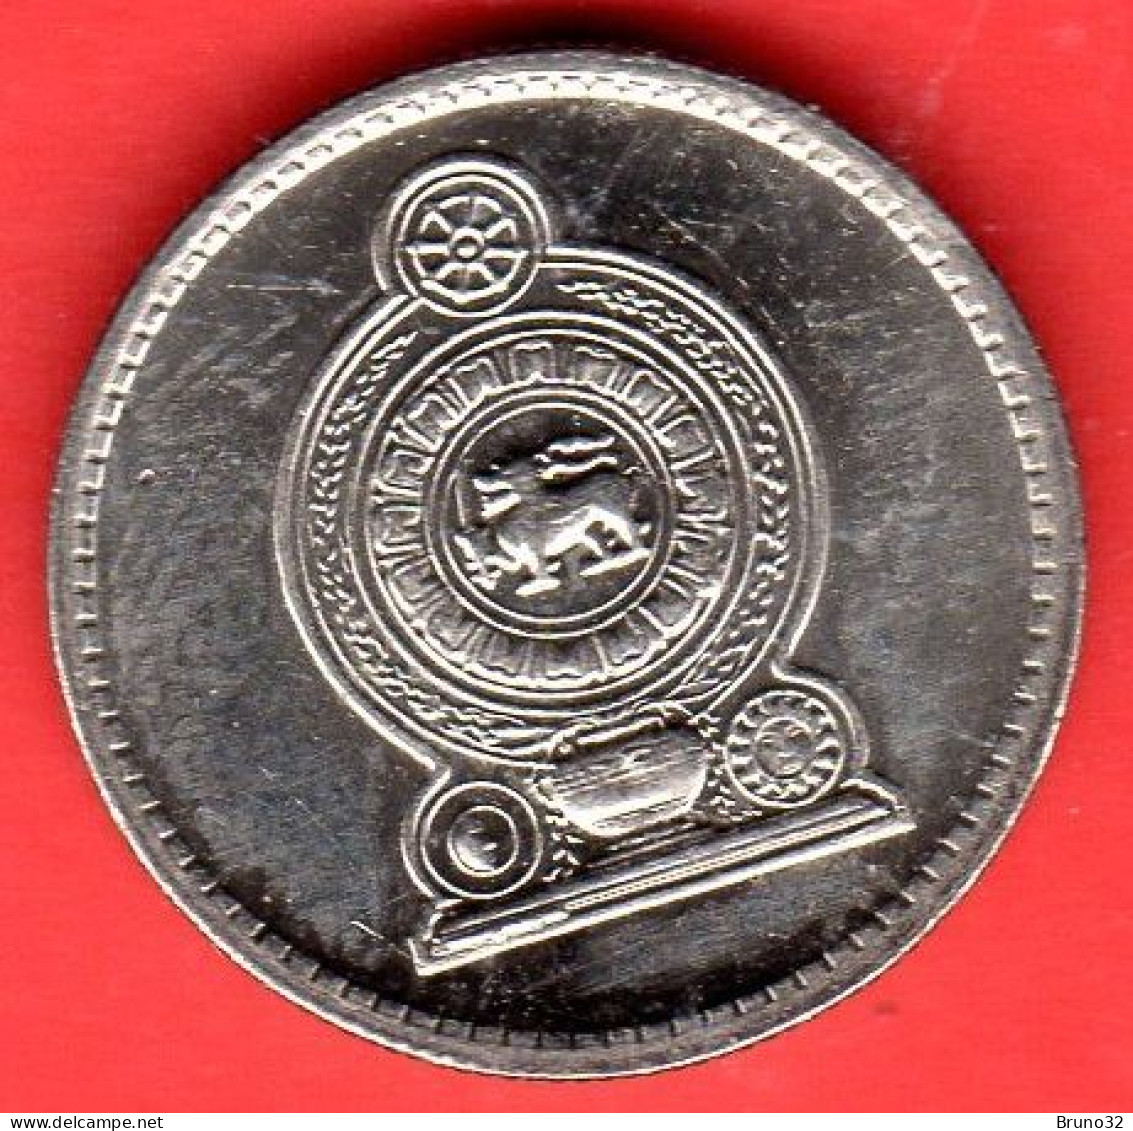 Sri Lanka - 1996 - 25 Cents - QFDC/aUNC - Come Da Foto - Sri Lanka (Ceylon)